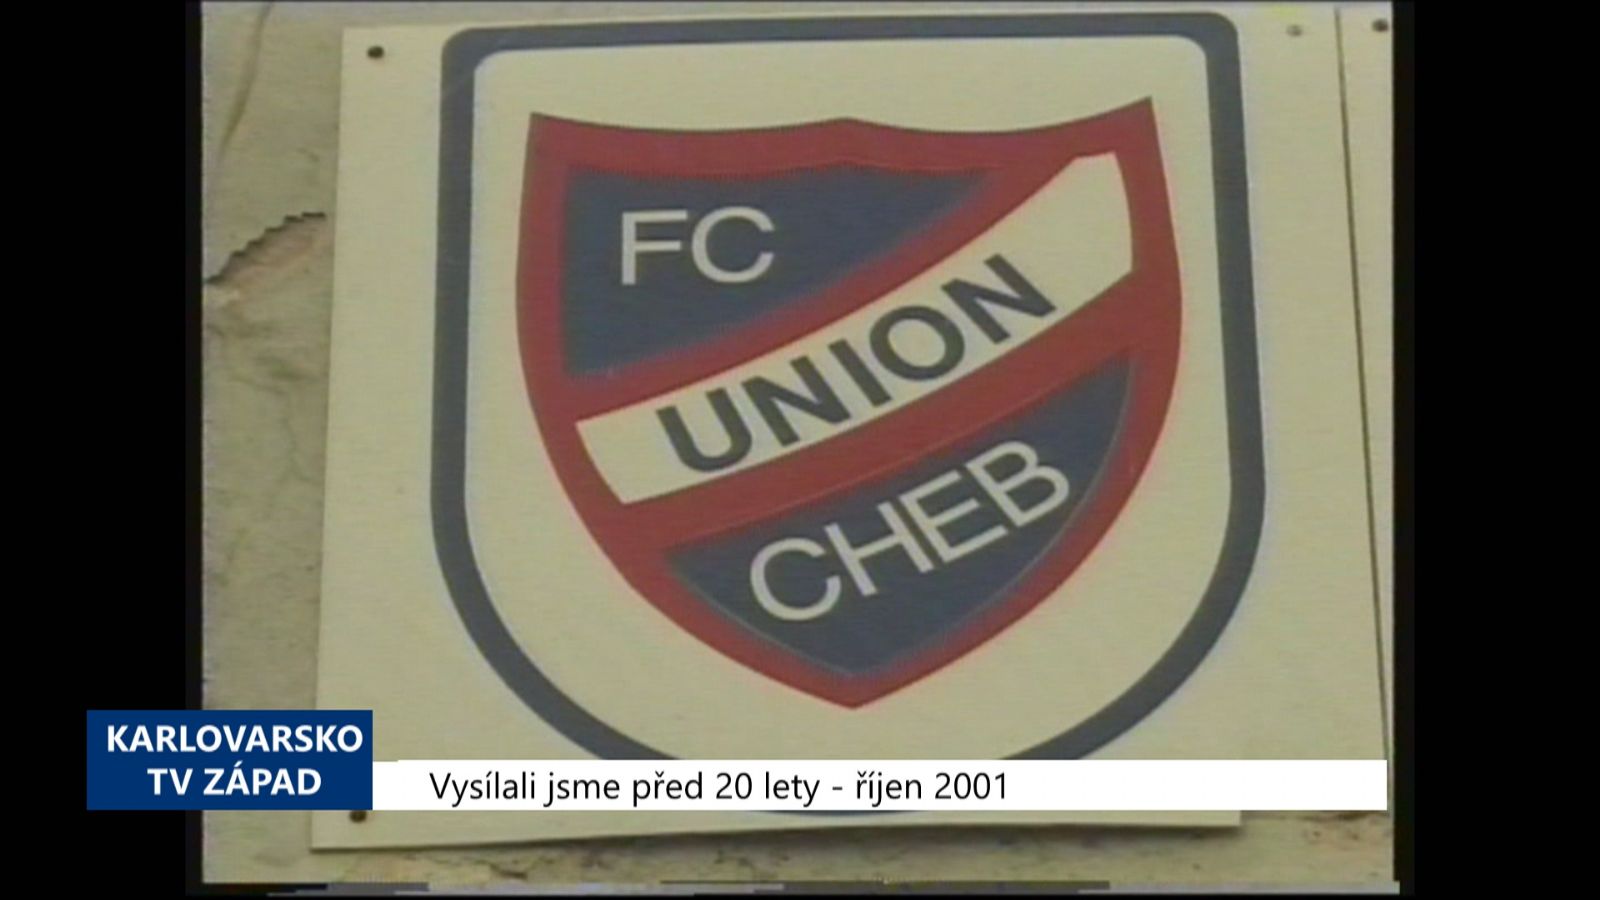 2001 – Cheb: Město přišlo o 11 milionů korun (TV Západ)